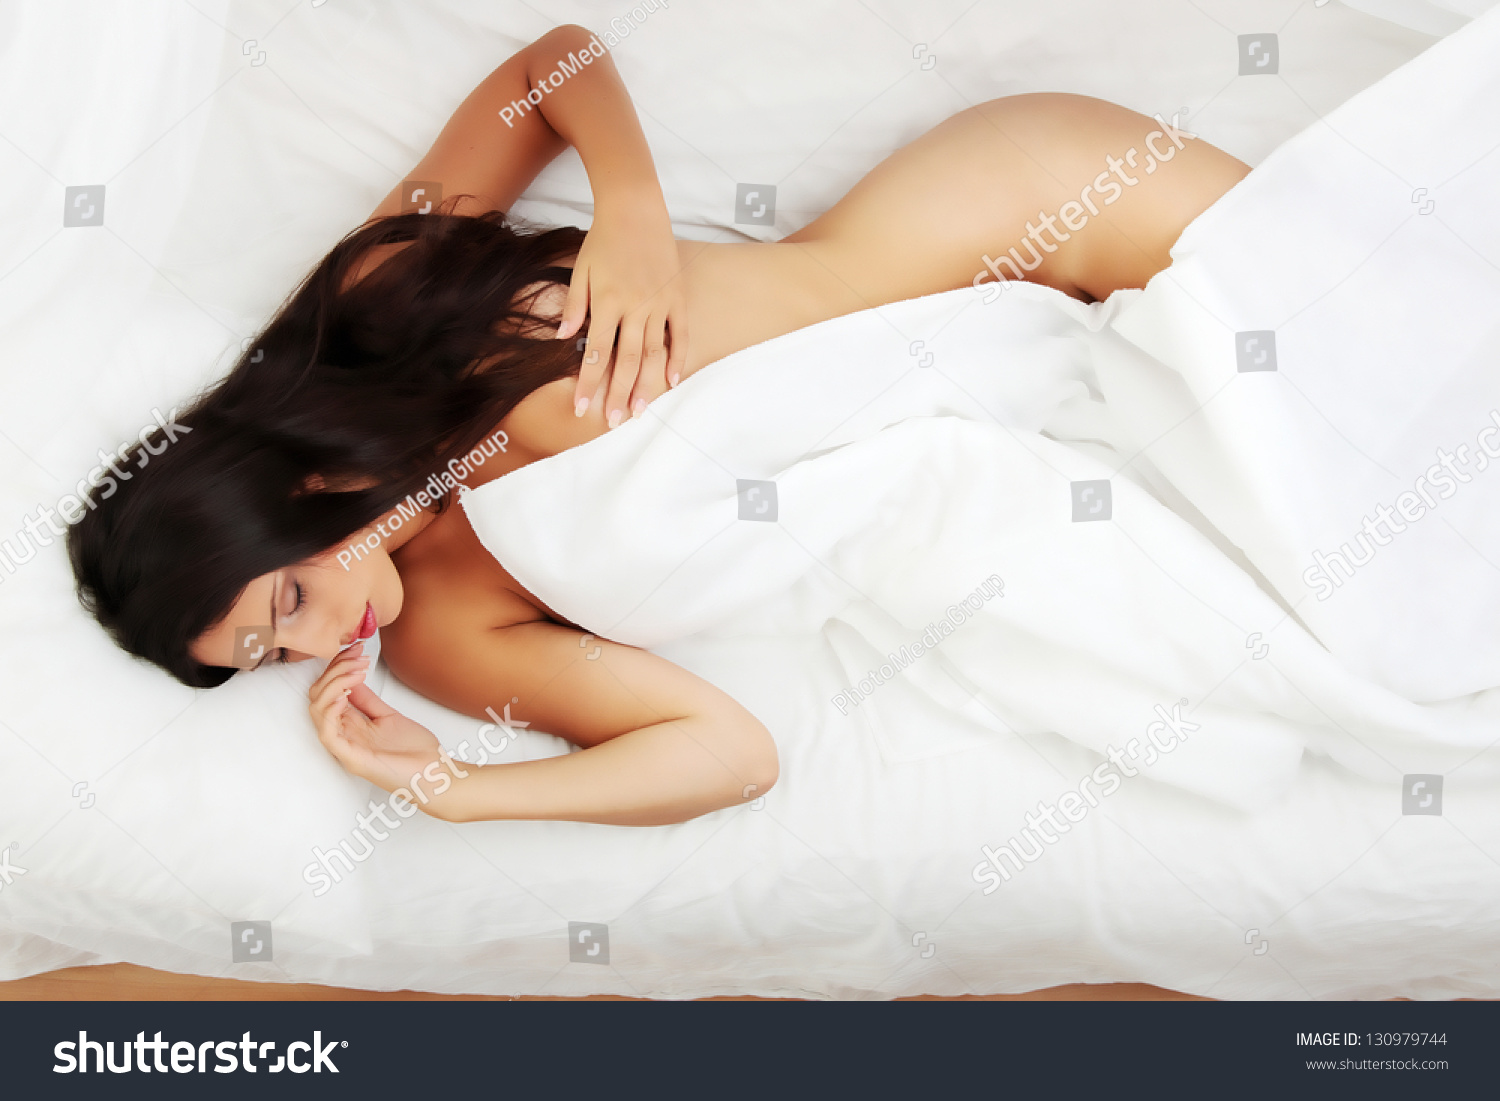 Голые в постели девушки долго просыпаются после сна